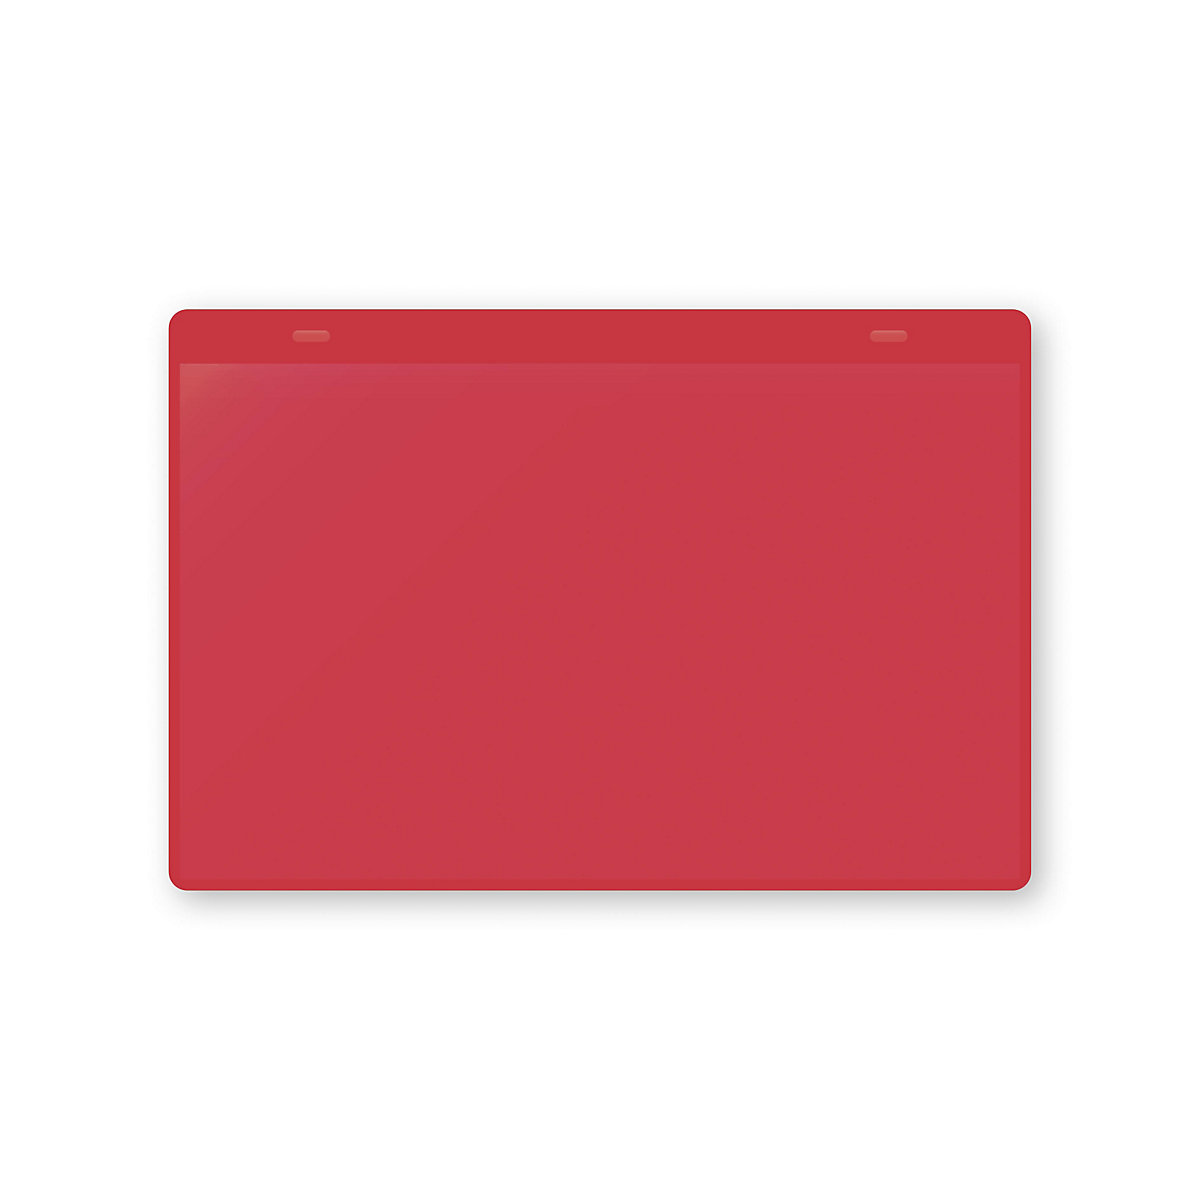 Dokumentumtartó tasakok akasztópánttal, DIN A5, fekvő, cs. e. 50 db, piros